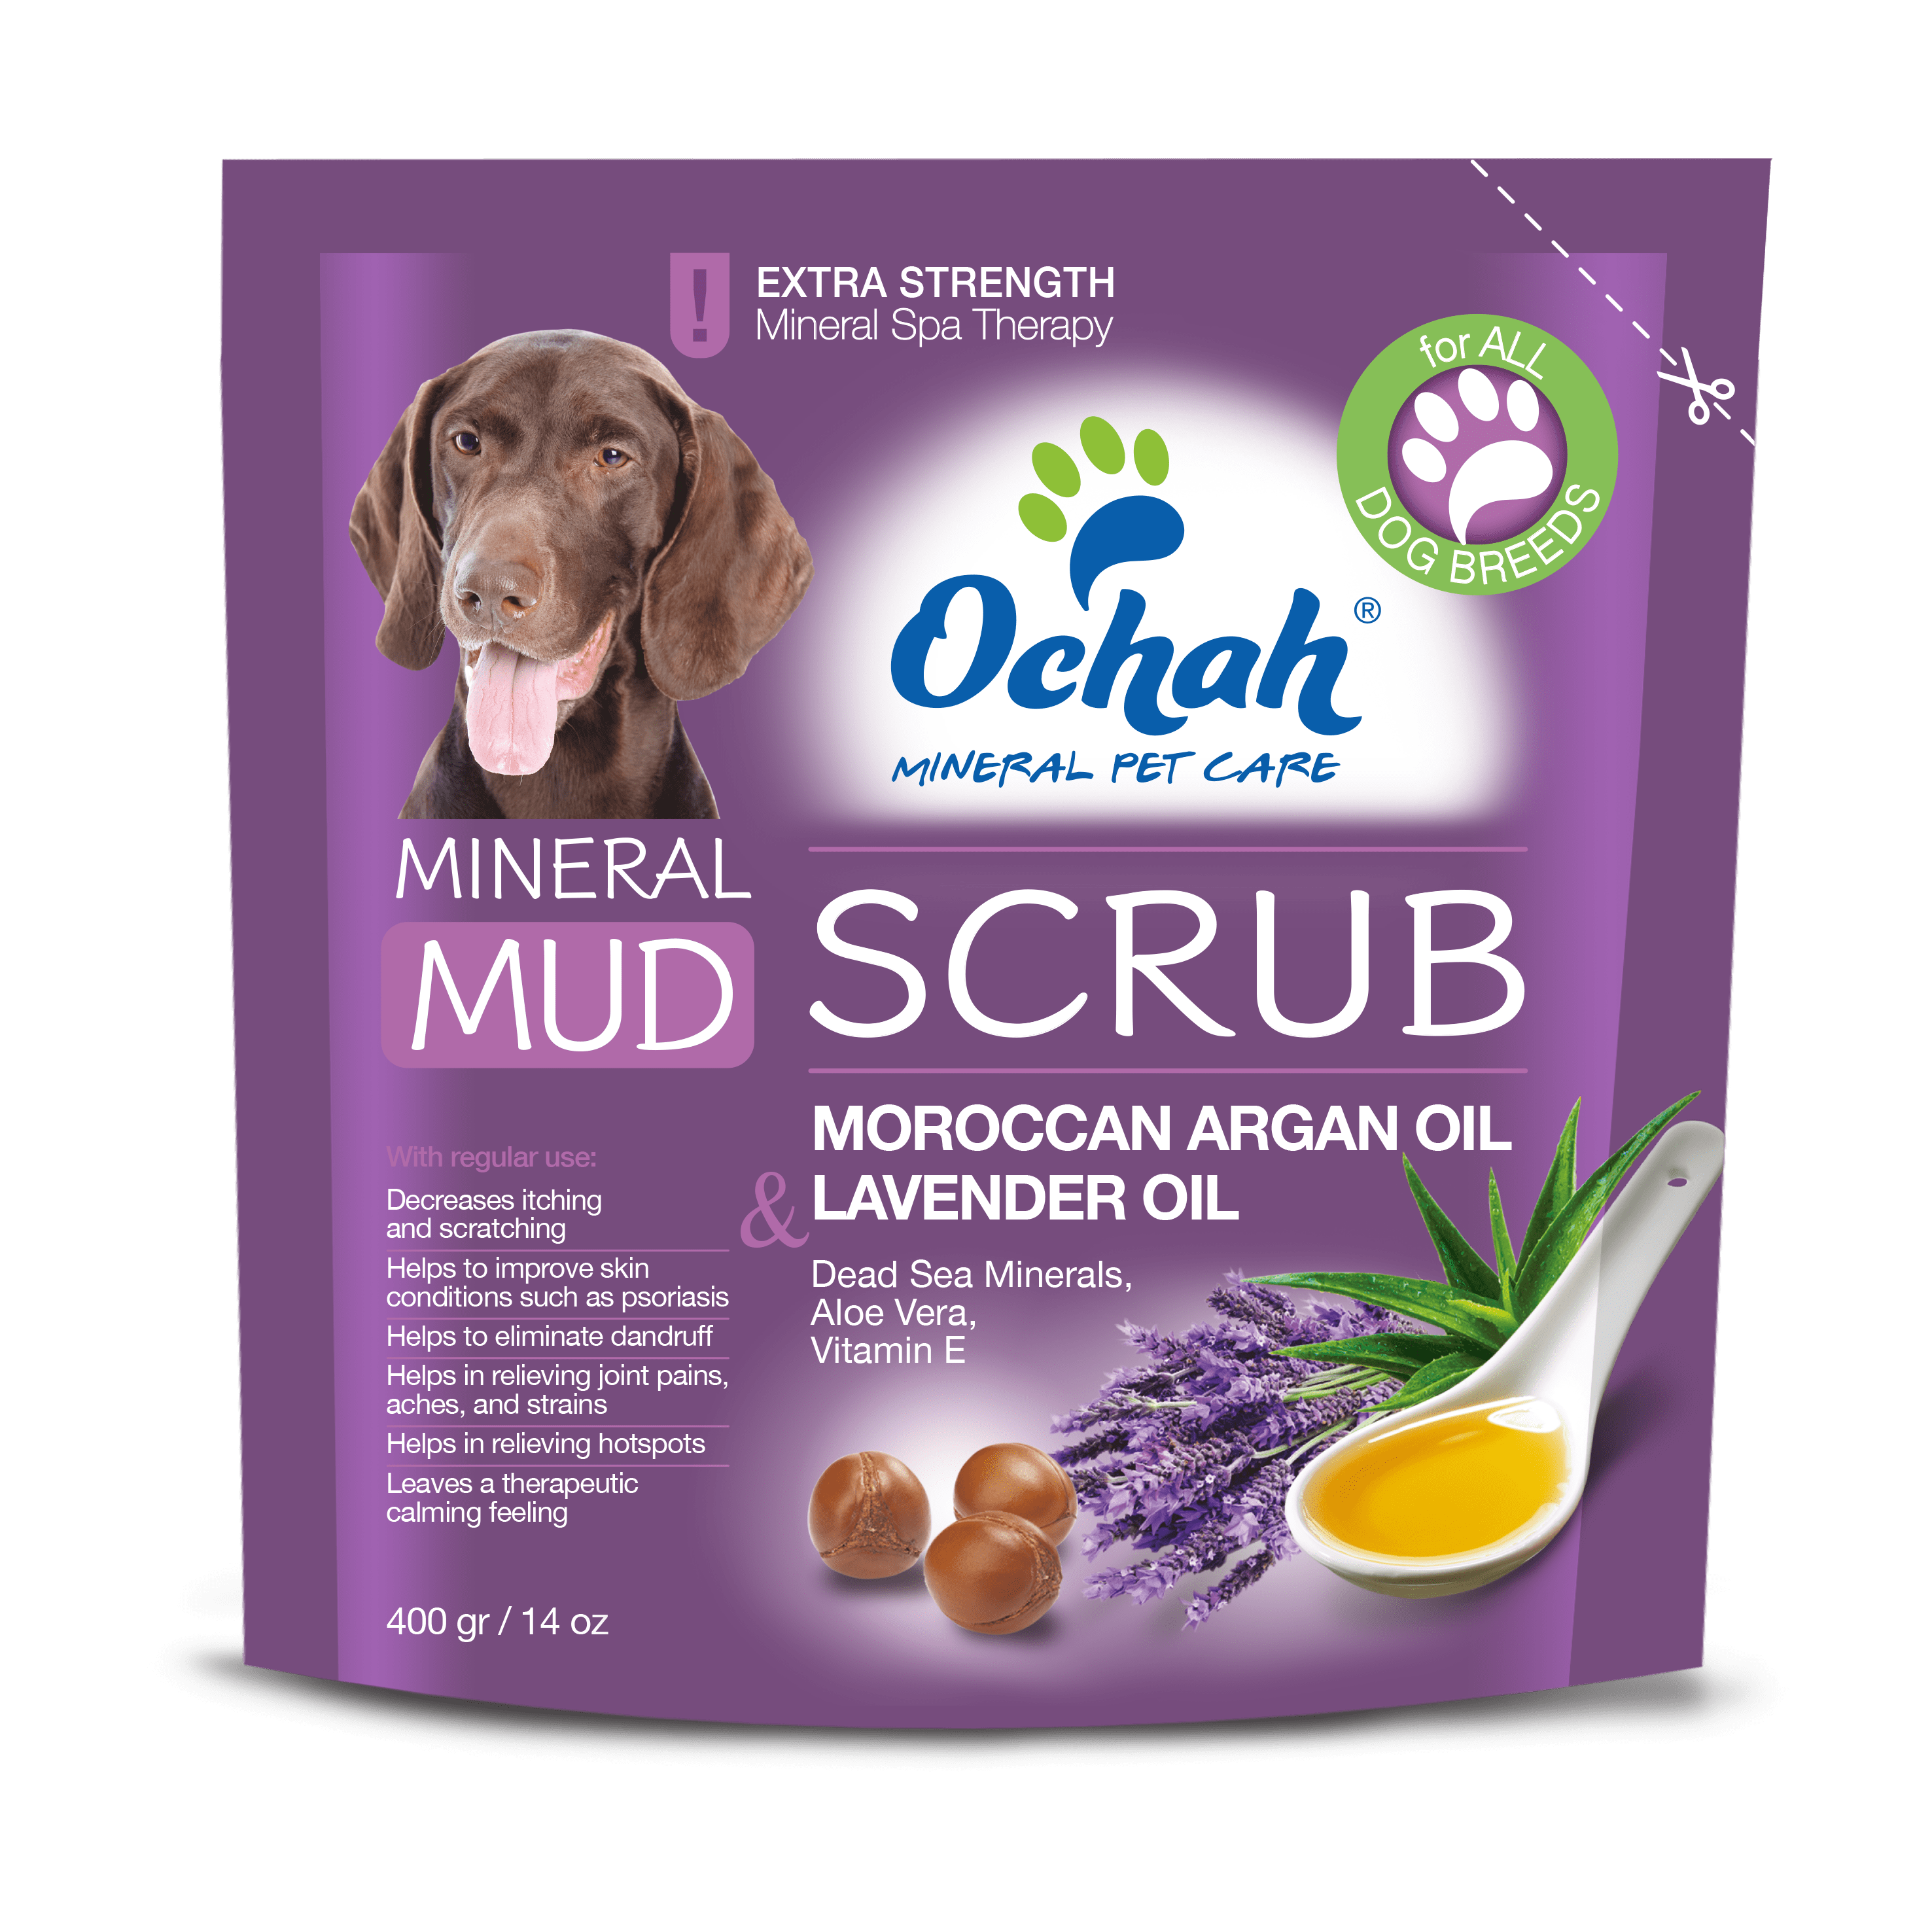 Mineral mud scrub with natural moroccan argan oil, lavender oil, dead sea mineral, aloe vera & vitamin E by Ochah Mineral Pet